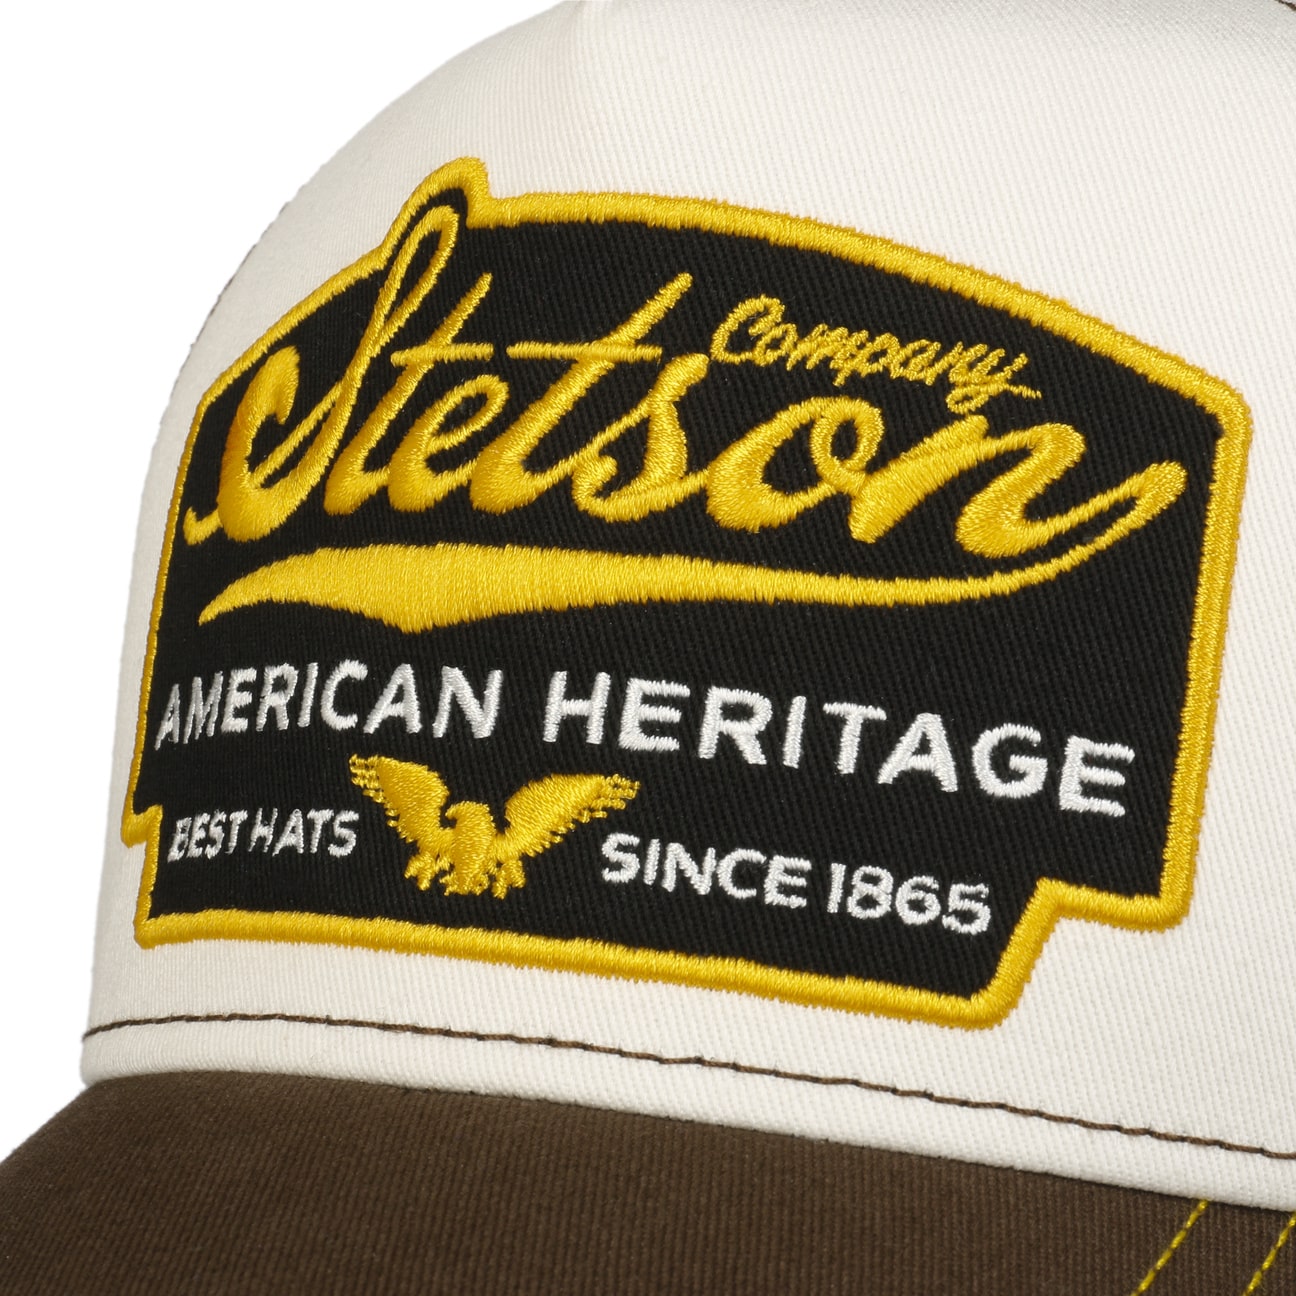 Trucker Cap - American Heritage